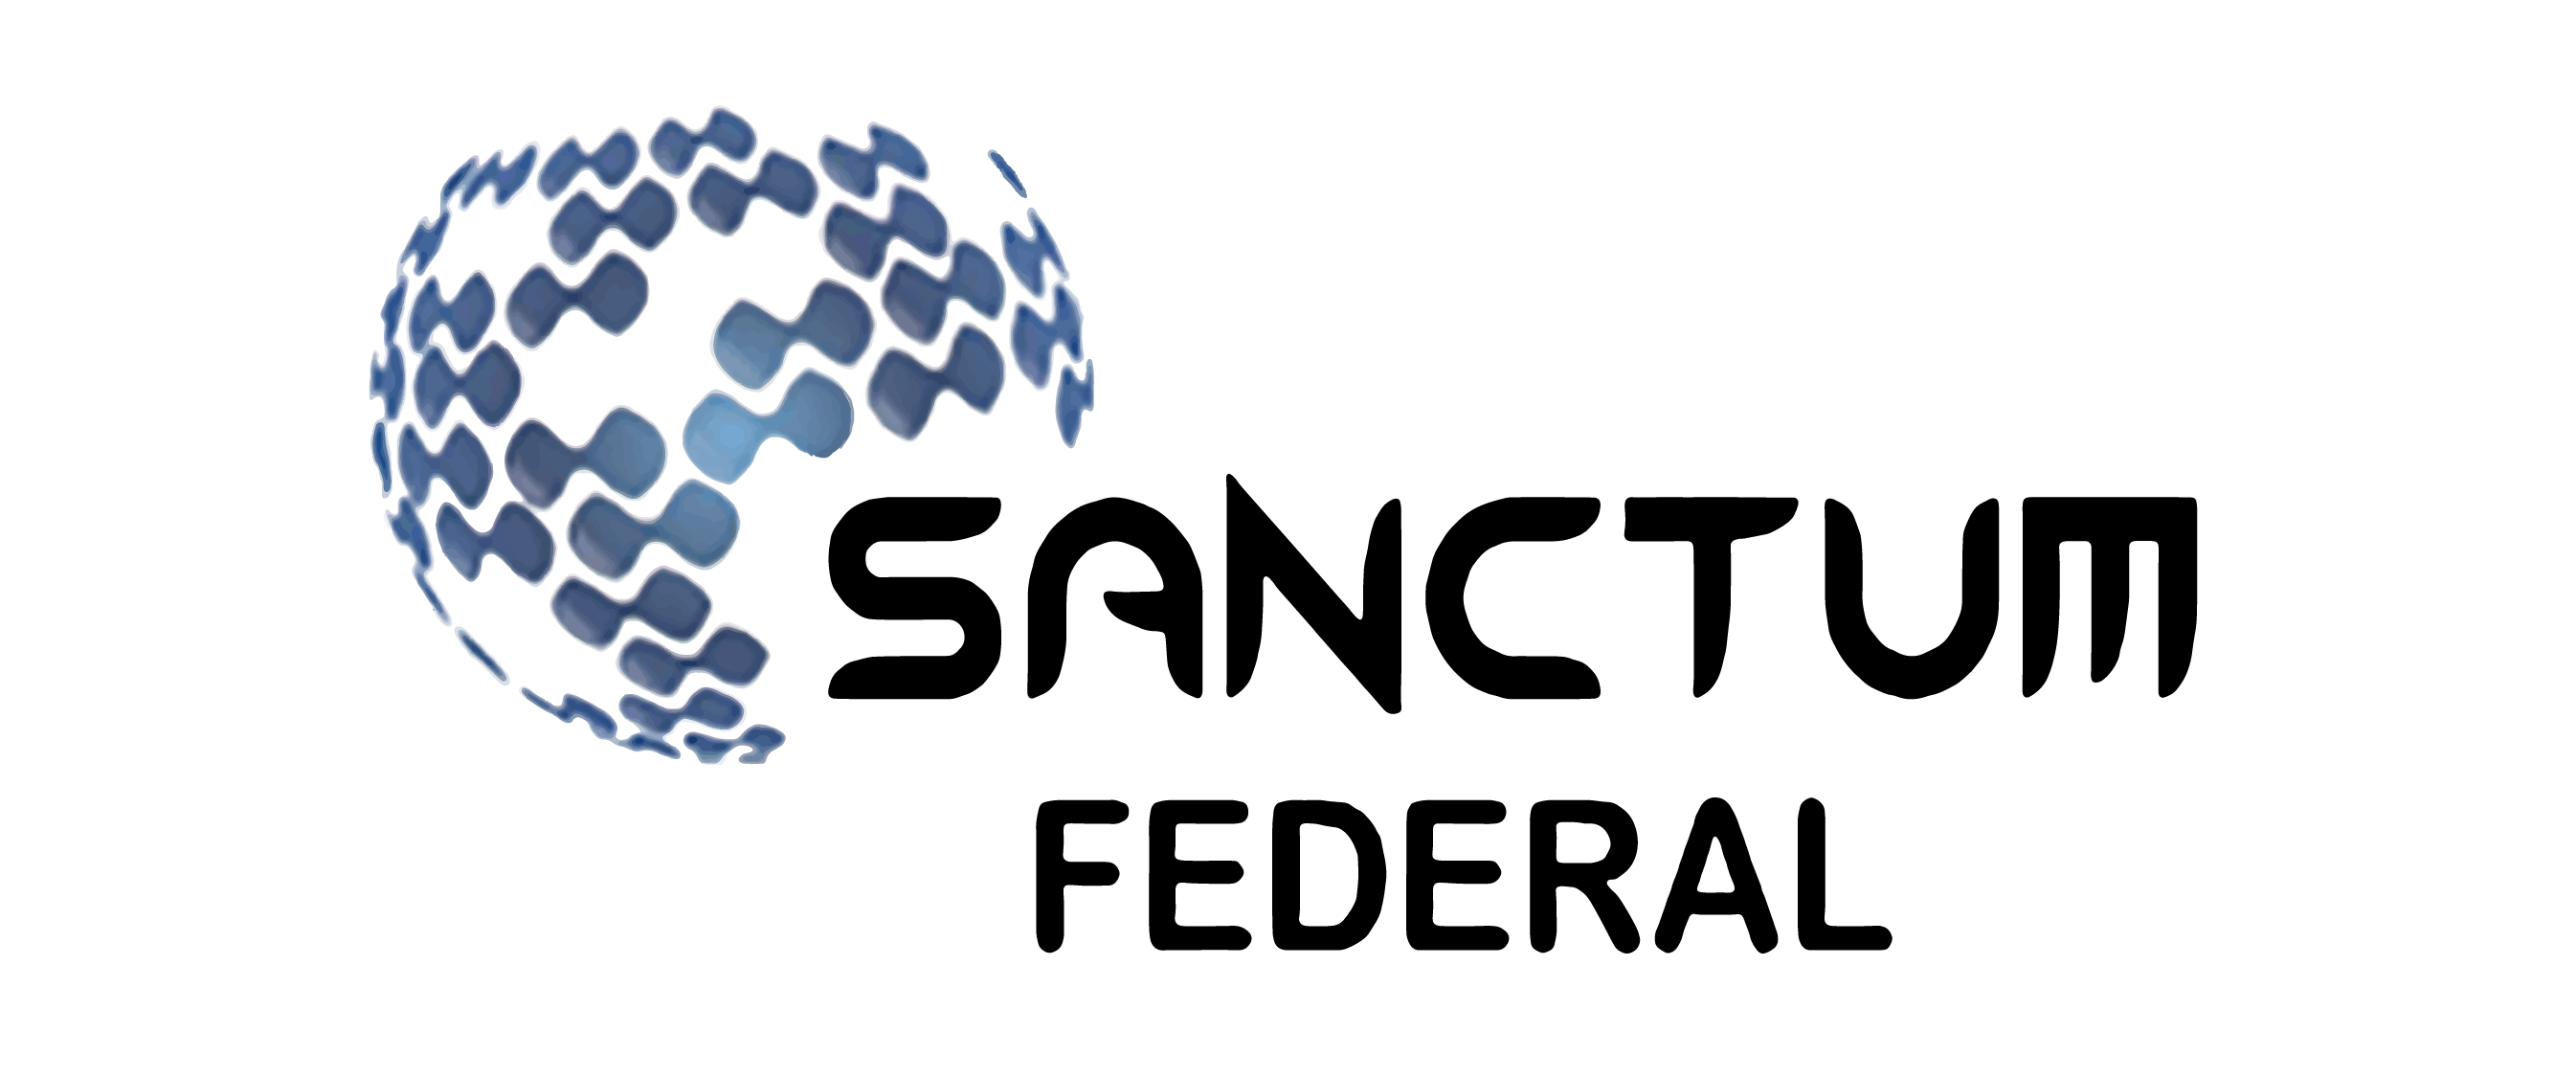 Sanctum Federal